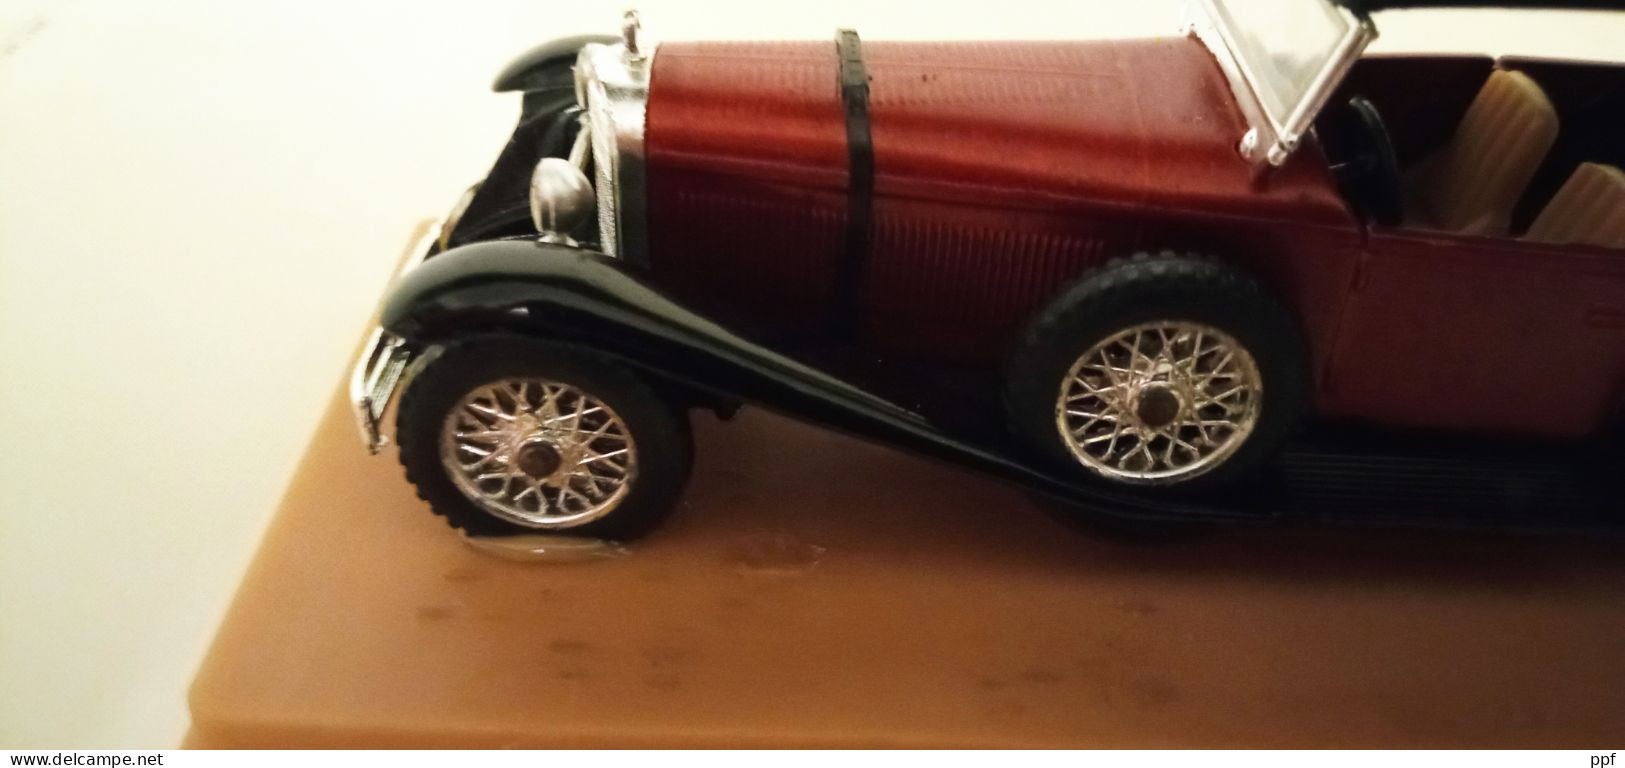 Lotto Bugatti Royale del 1930 + Mercedes anni 30 + BMW 502 Cabrio anni 40